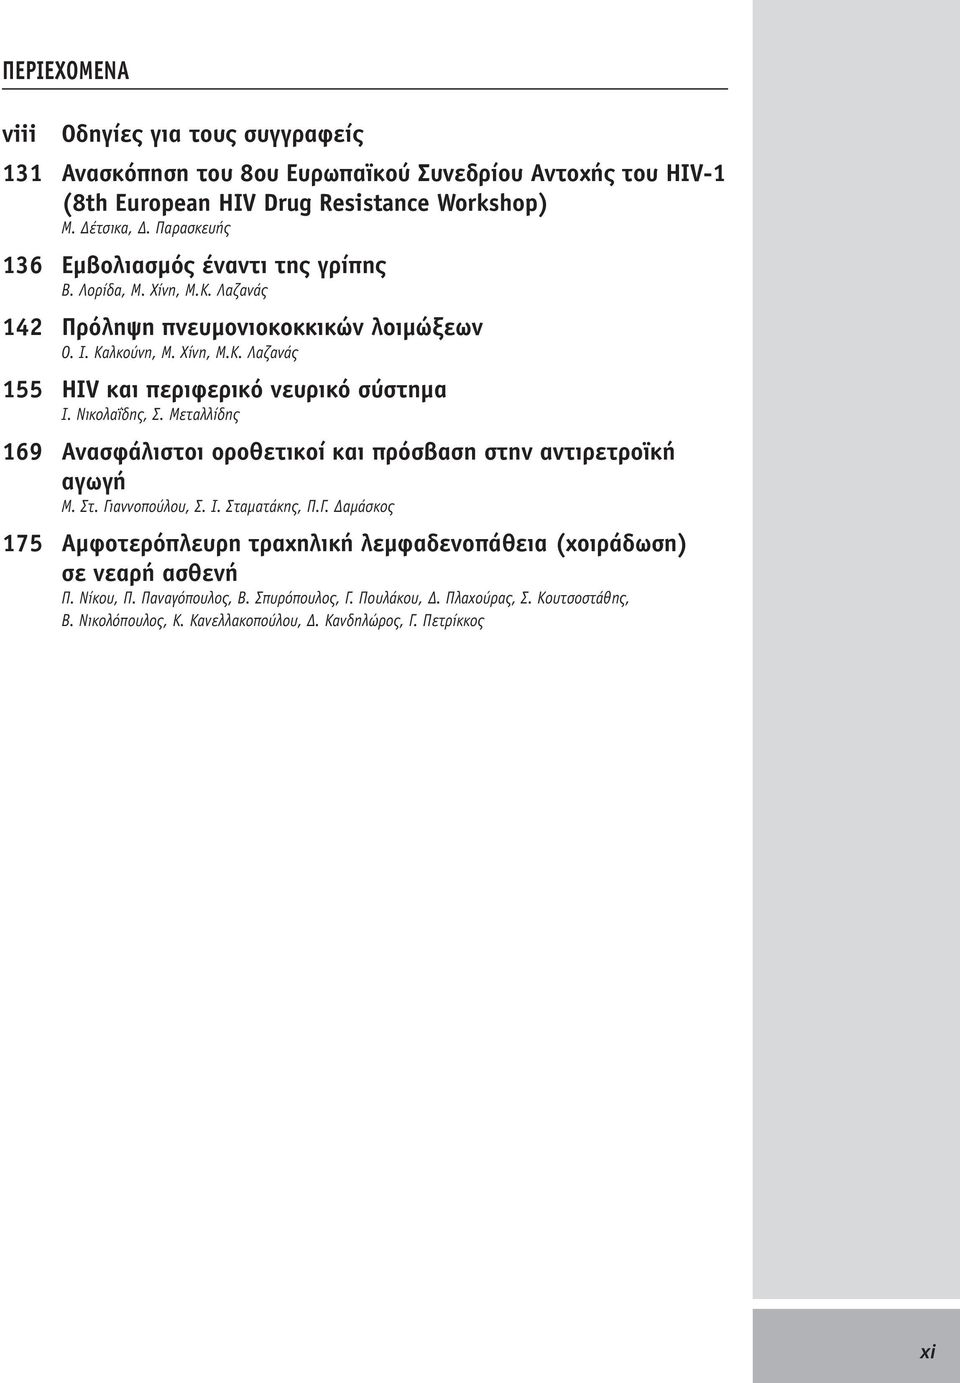 Νικολαΐδης, Σ. Μεταλλίδης 169 Ανασφάλιστοι οροθετικοί και πρόσβαση στην αντιρετροϊκή αγωγή Μ. Στ. Γι